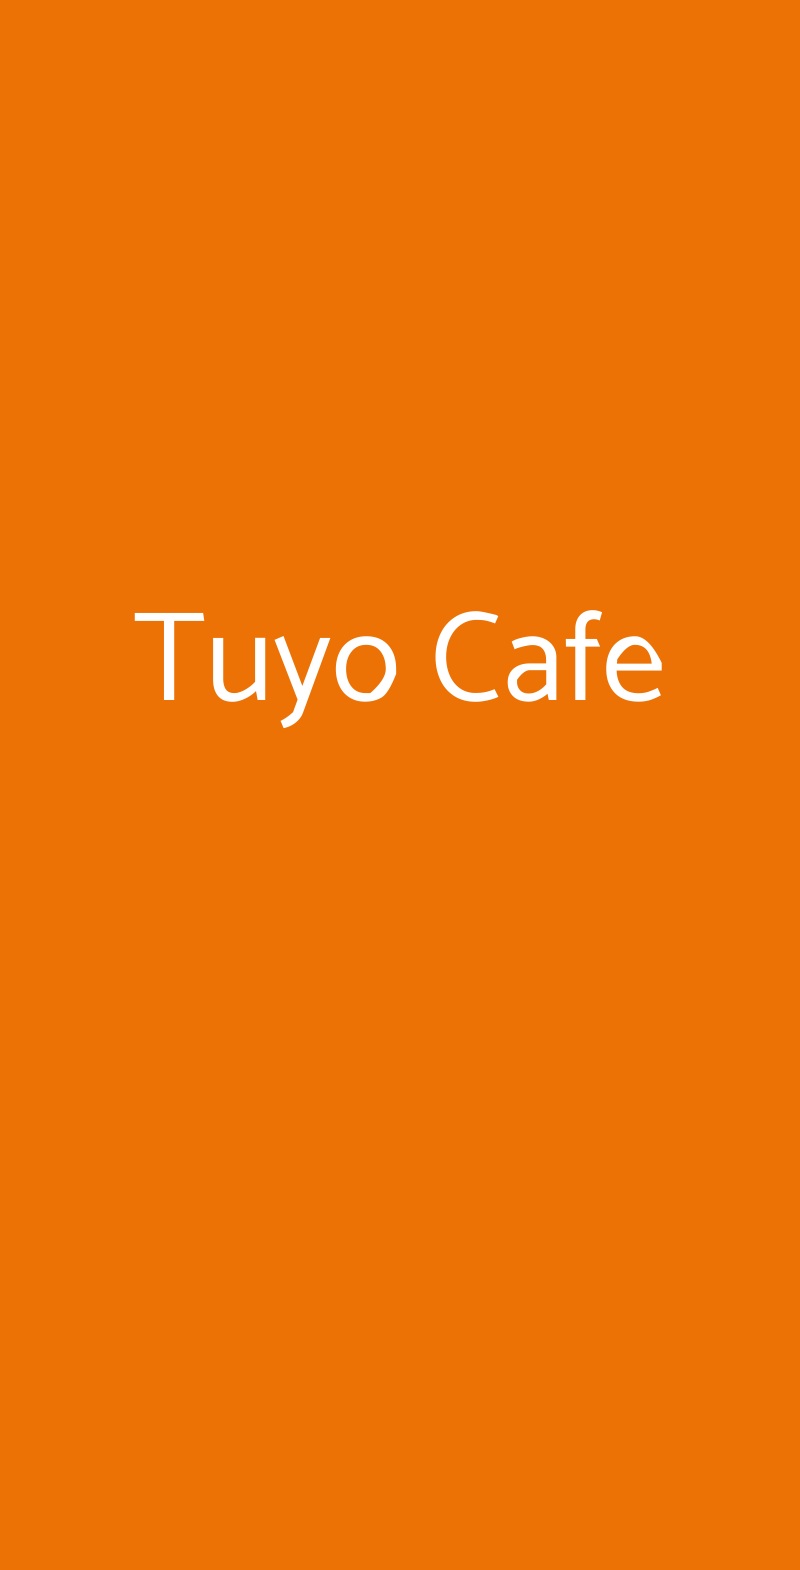 Tuyo Cafe Milano menù 1 pagina